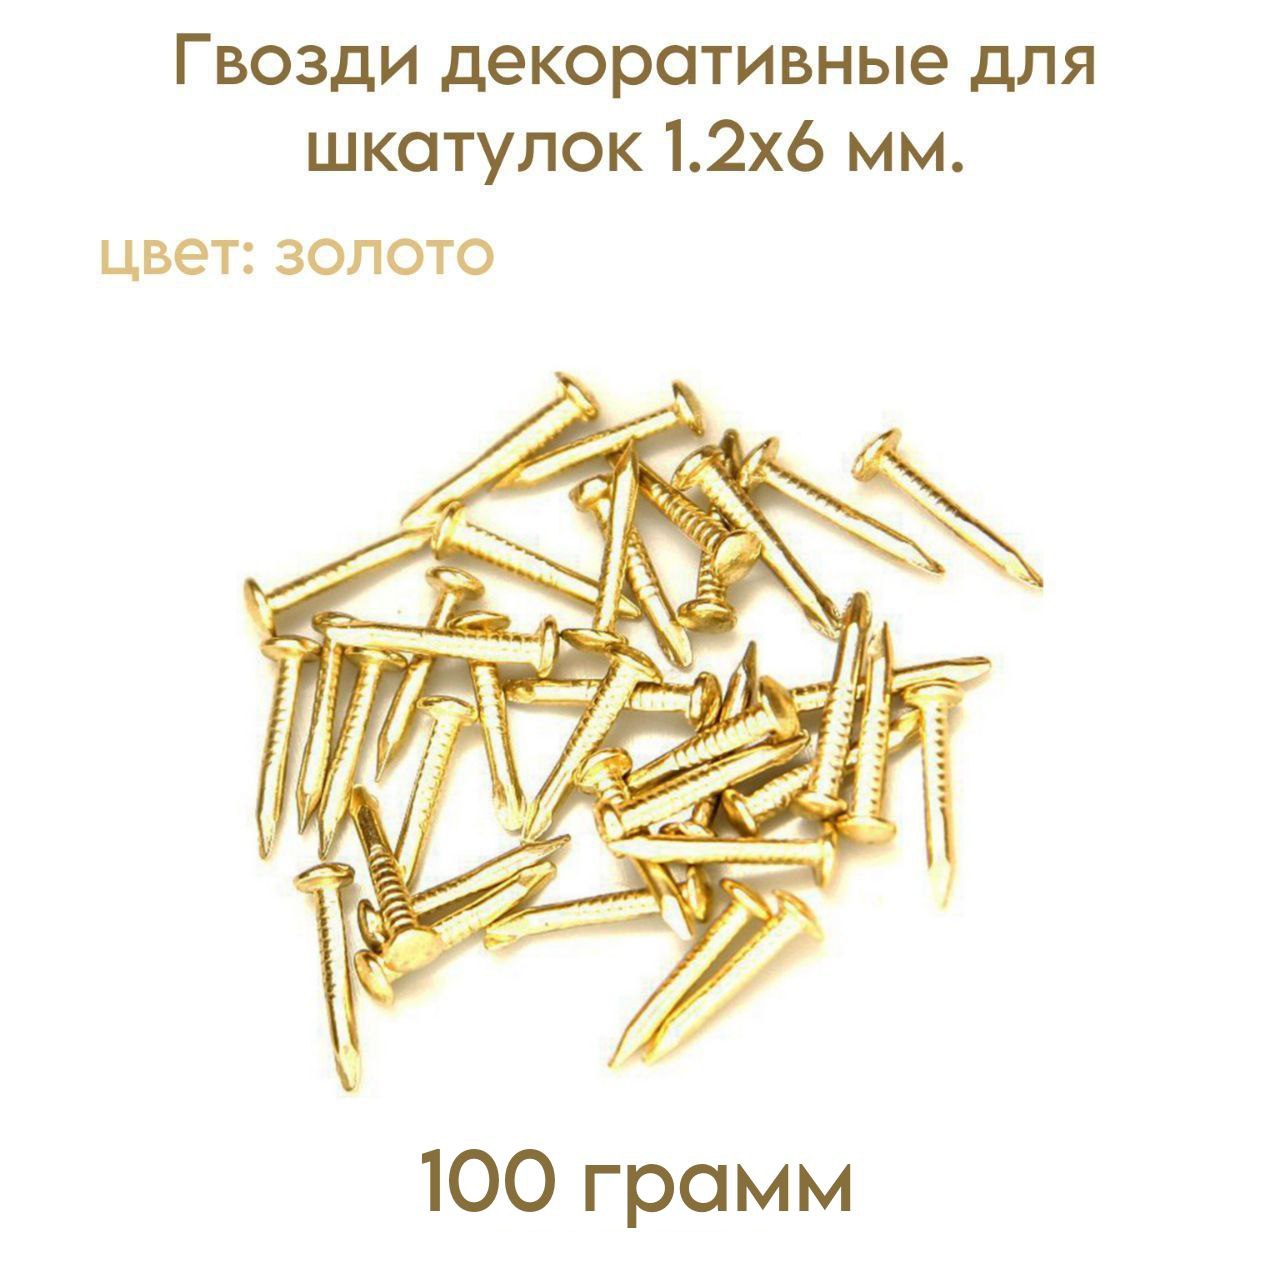 фото Гвозди livgard декоративные для шкатулок, золото, 12х6 мм 100 грамм